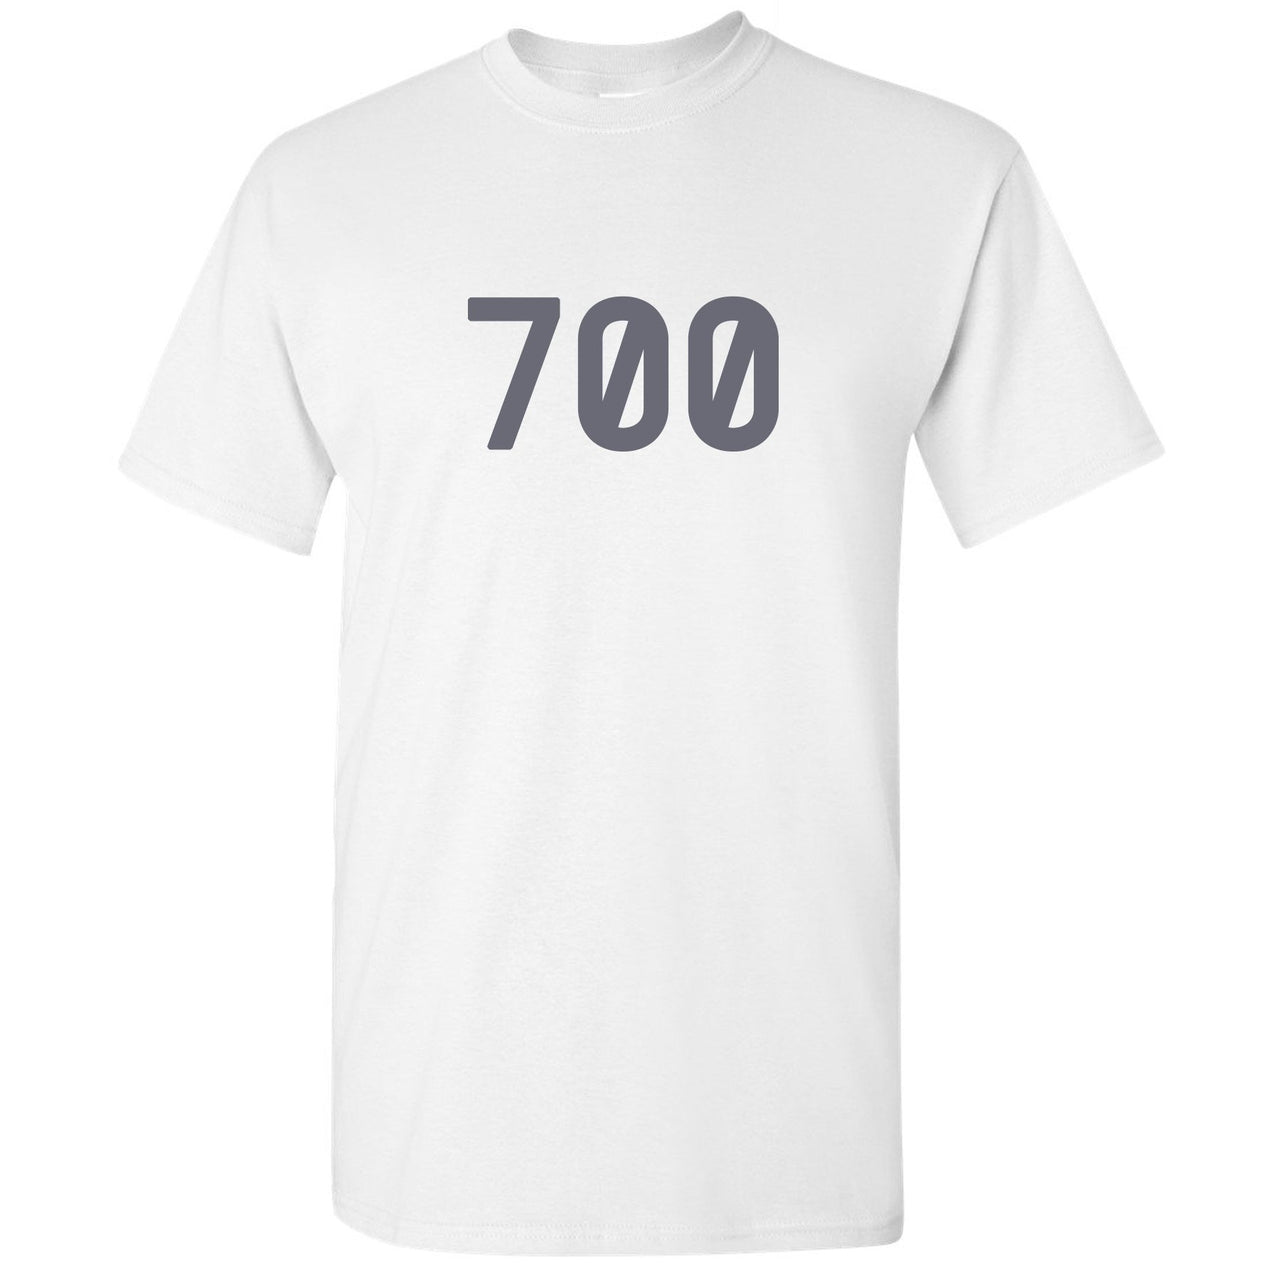 Analog 700s T Shirt | 700, White